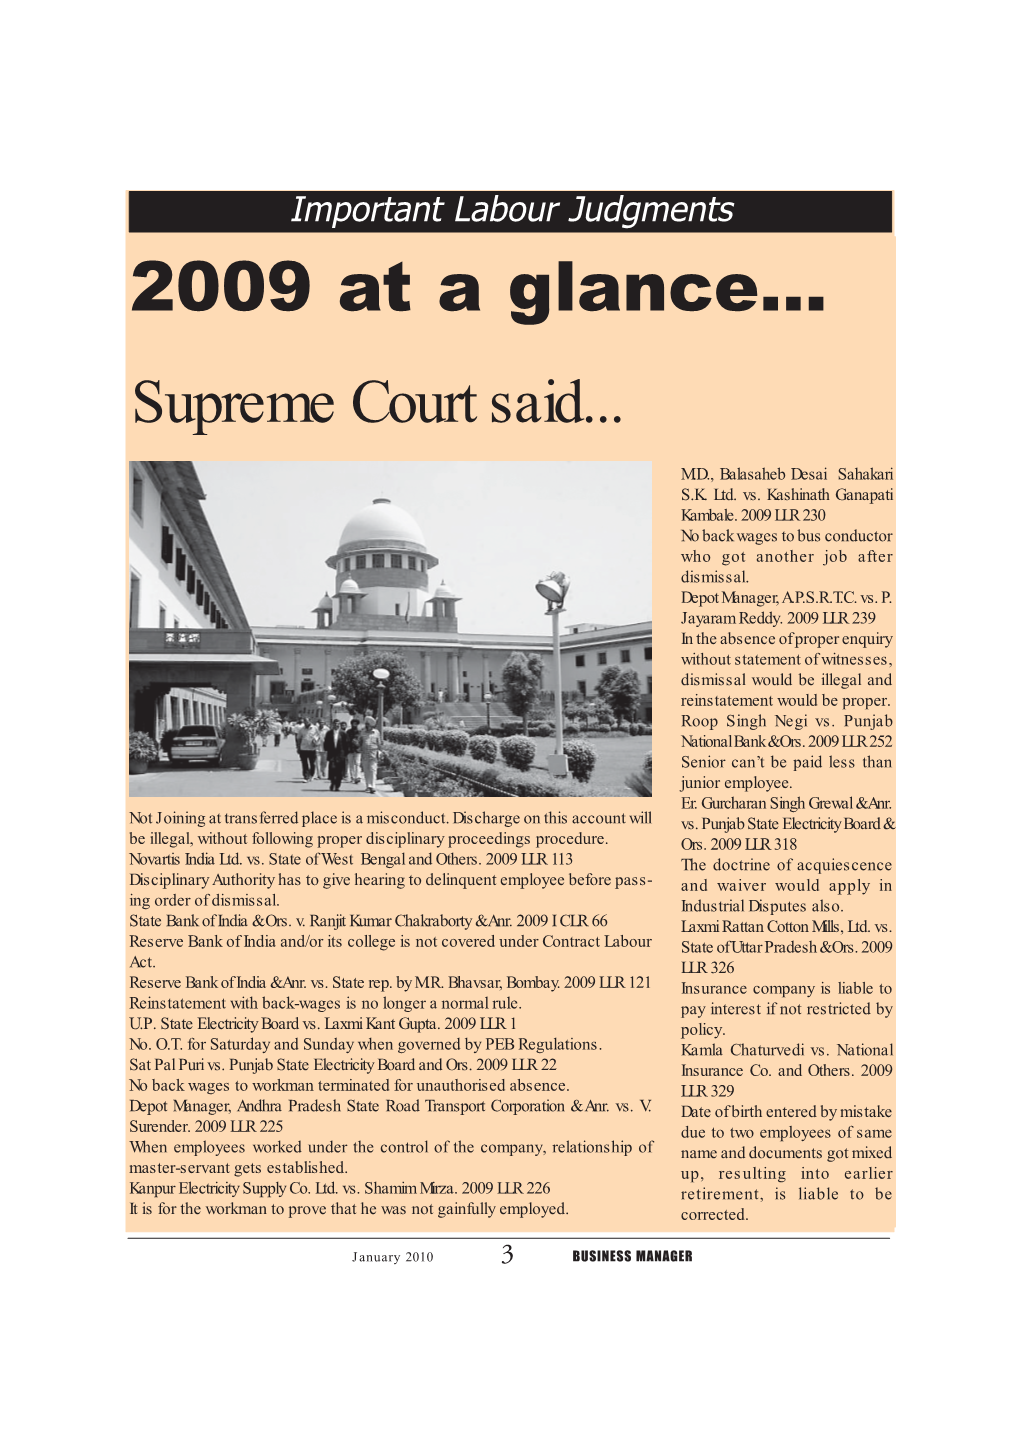 2009 at a Glance... Supreme Court Said